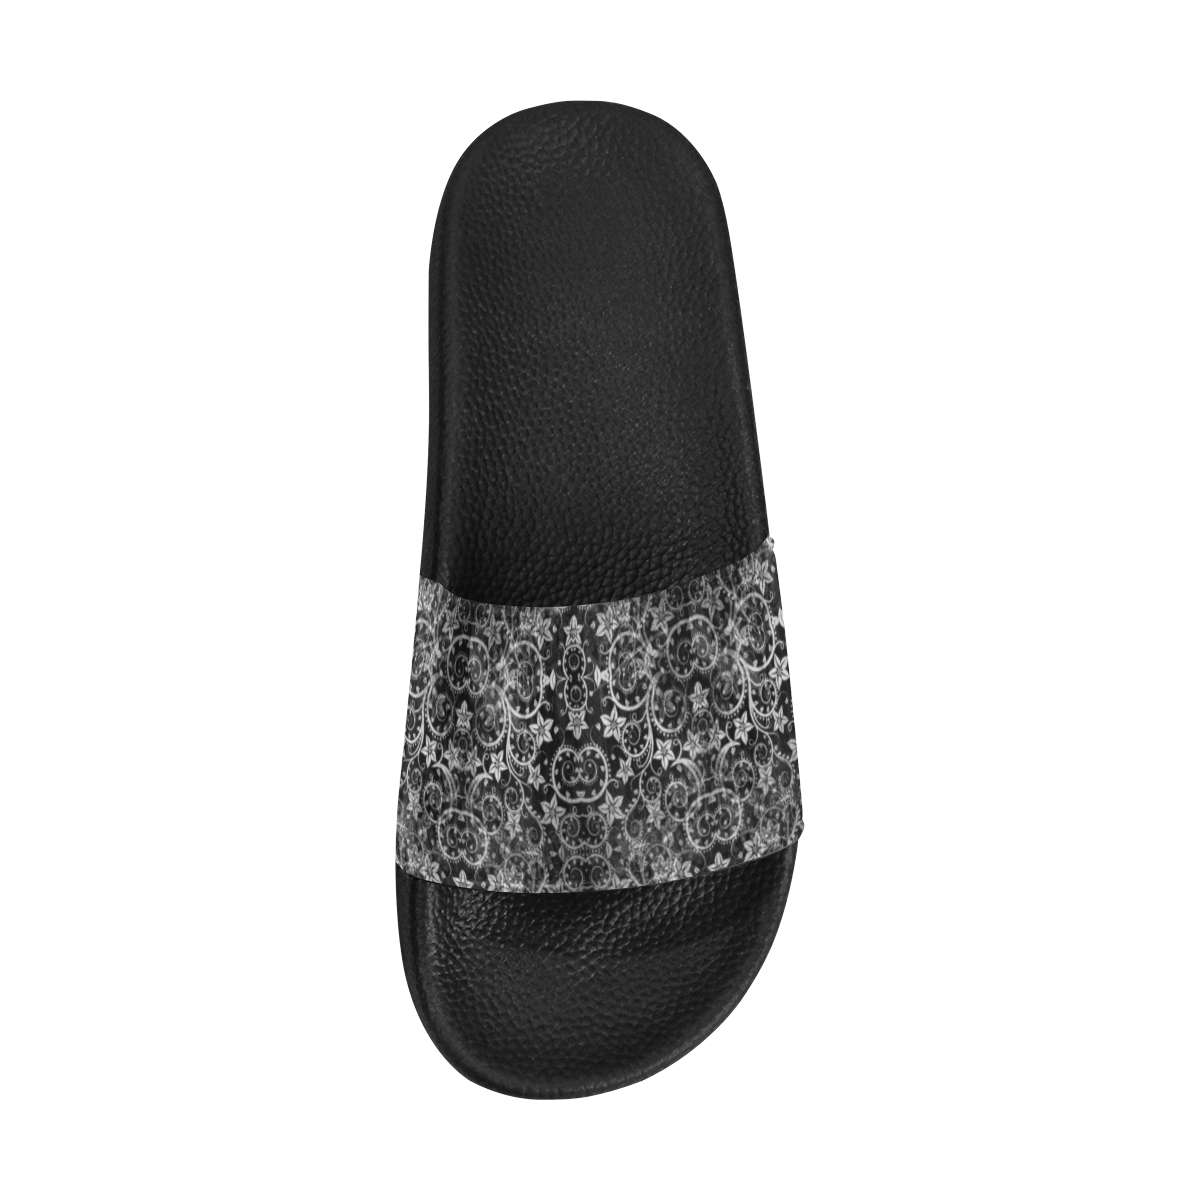 Royal Krone by Artdream Men's Slide Sandals (Model 057)